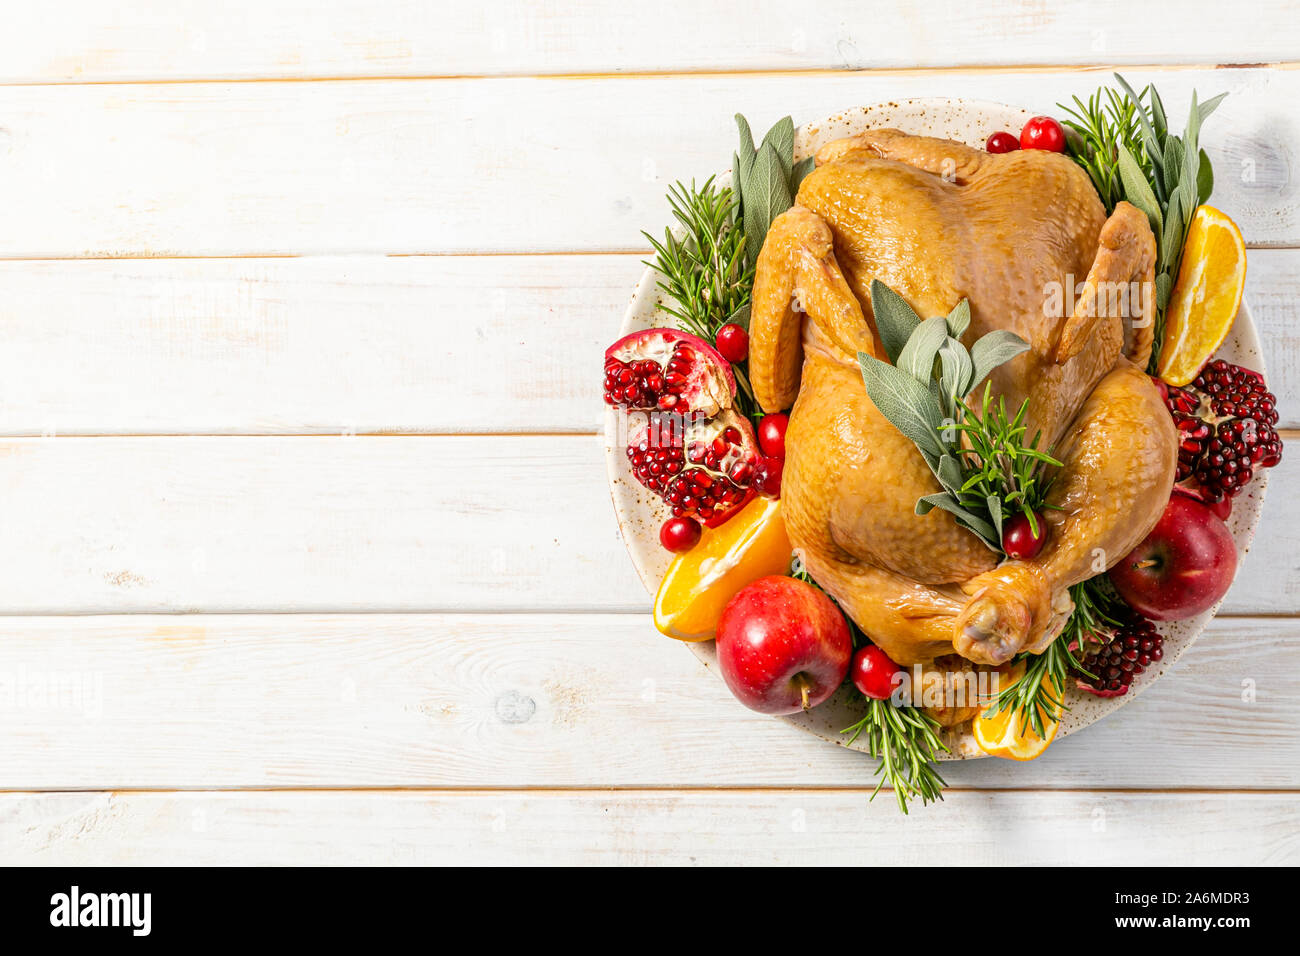 Auswahl an traditionellen Thanksgiving Essen - Türkei, Kartoffelpüree patatoes, grüne Bohnen, Apple Pie auf rustikalen Hintergrund Stockfoto